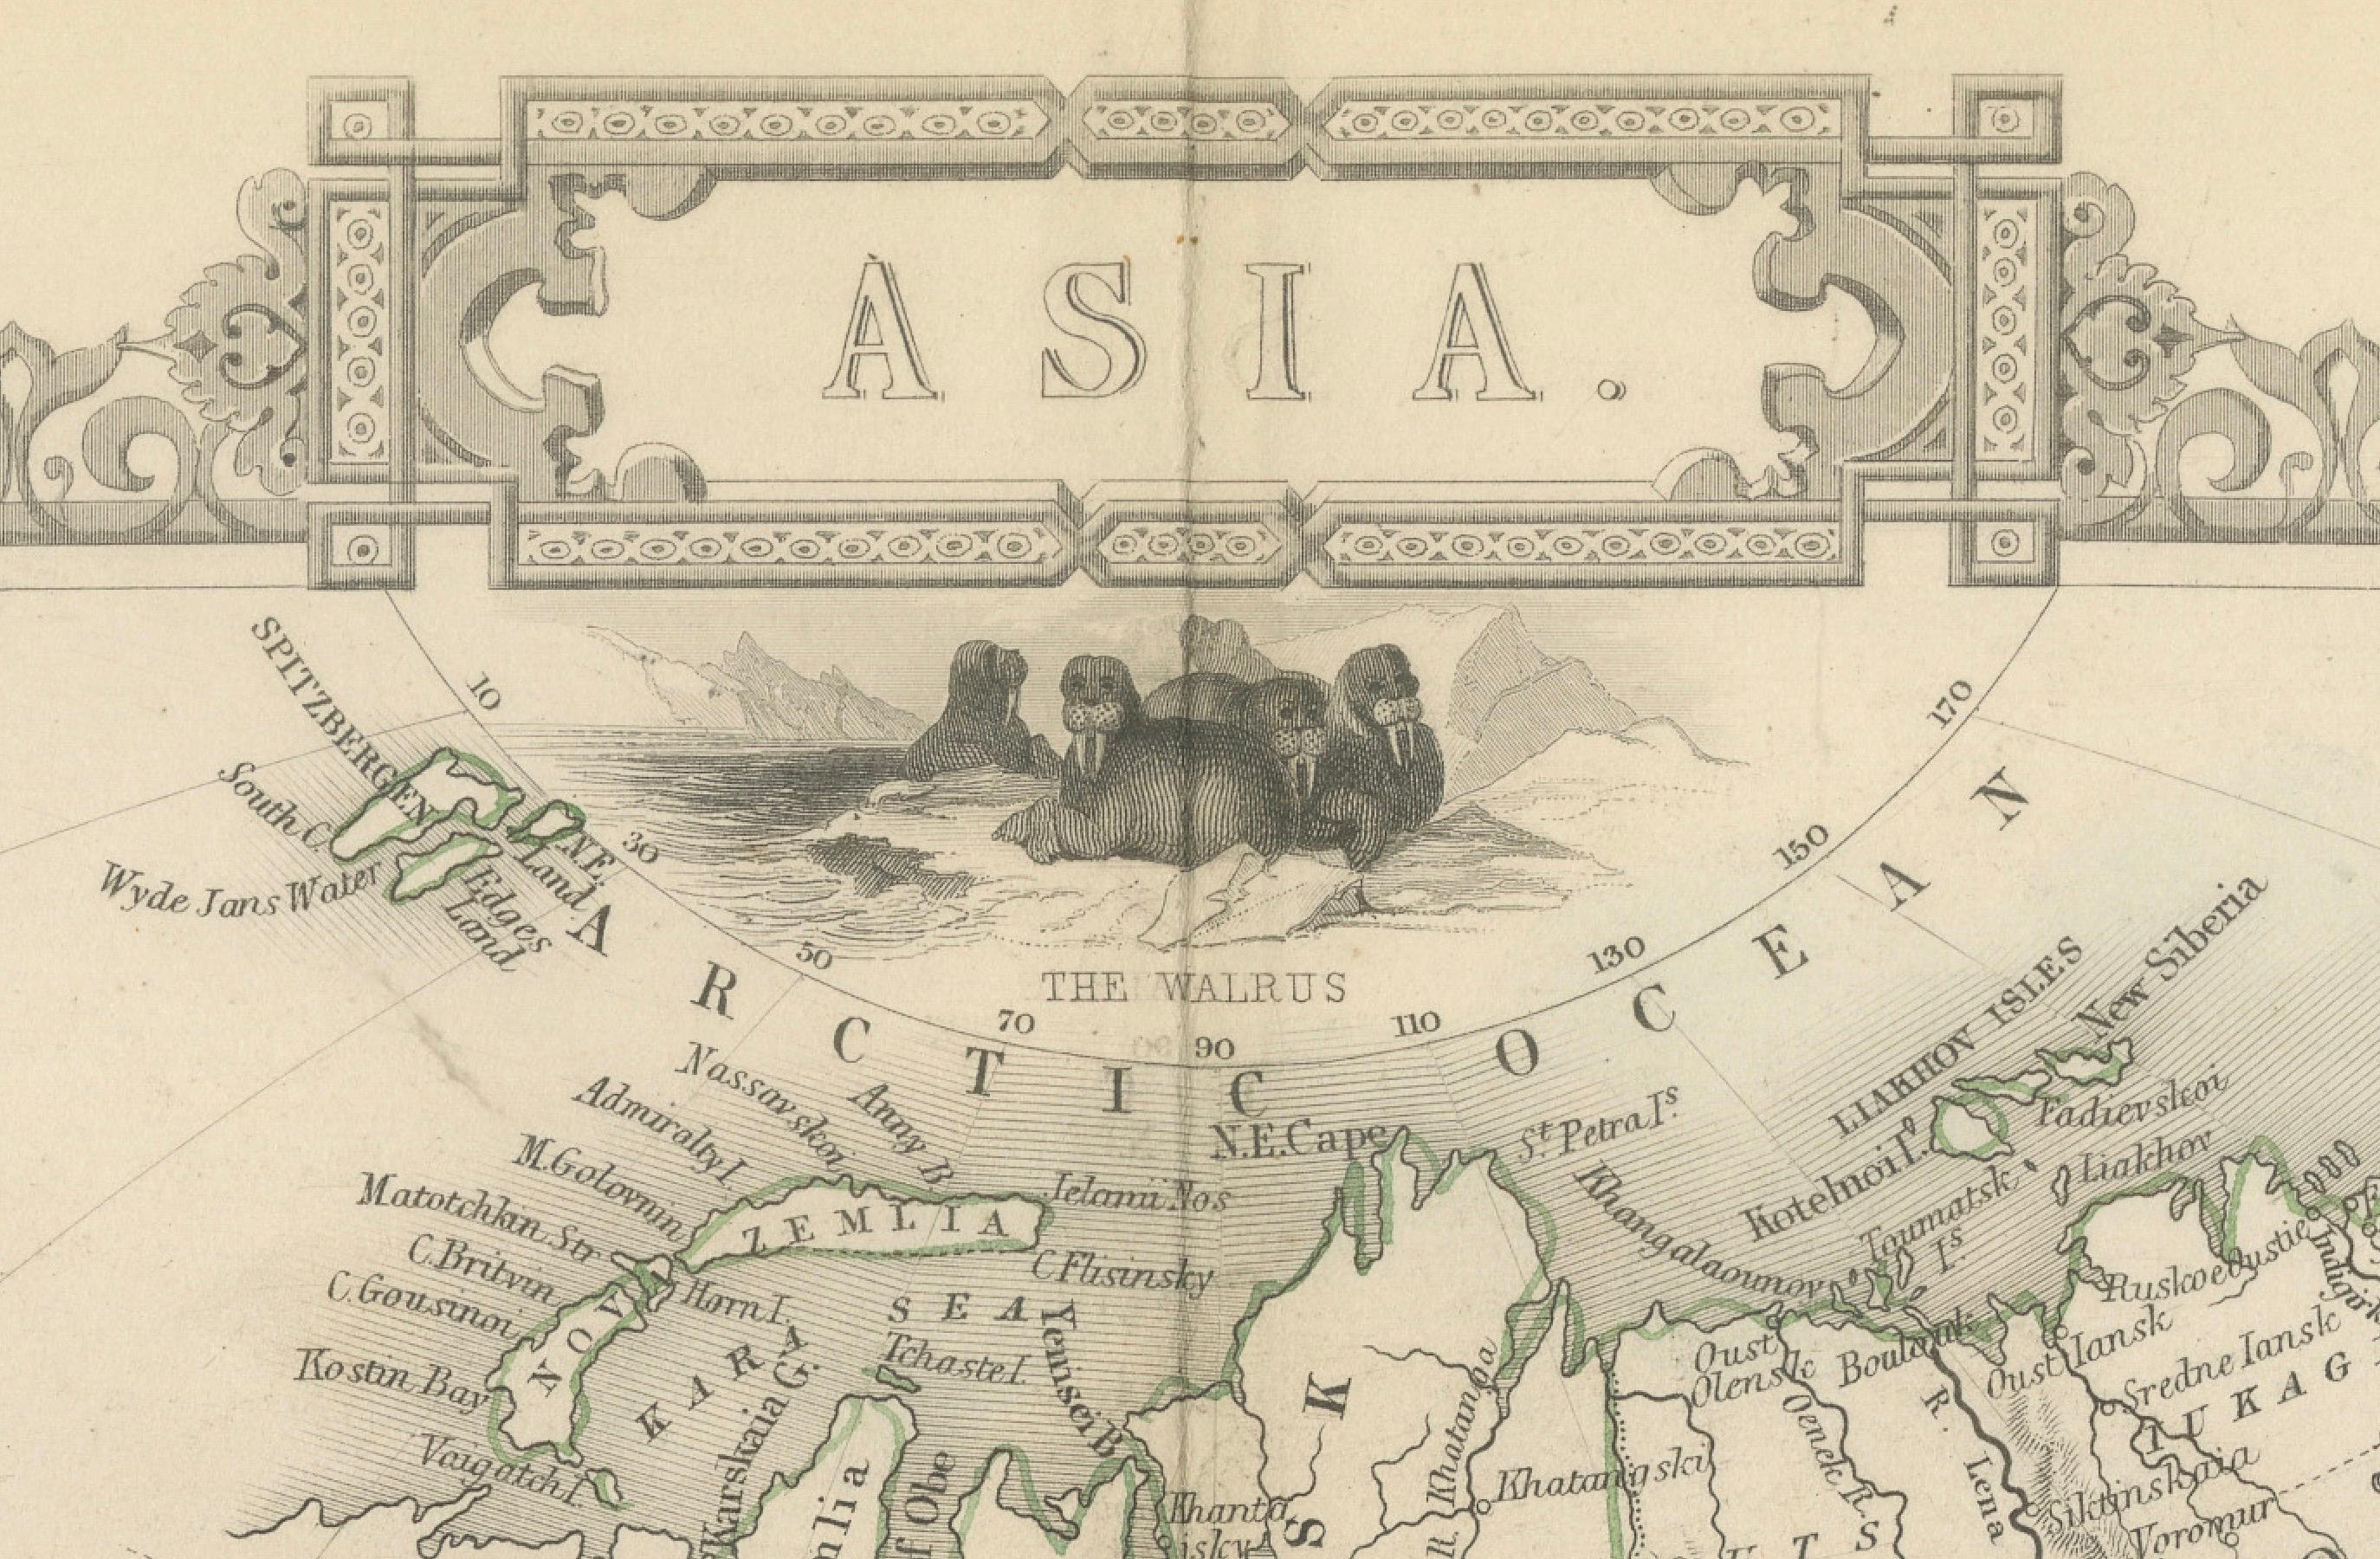 John Tallis & Company, bekannt für ihre dekorativen Karten aus der Mitte des 19. Jahrhunderts, schuf diese Karte von Asien. Diese Karten zeichneten sich durch ihre kunstvollen Ränder und detaillierten Vignetten aus. Sie enthielten oft Szenen, die